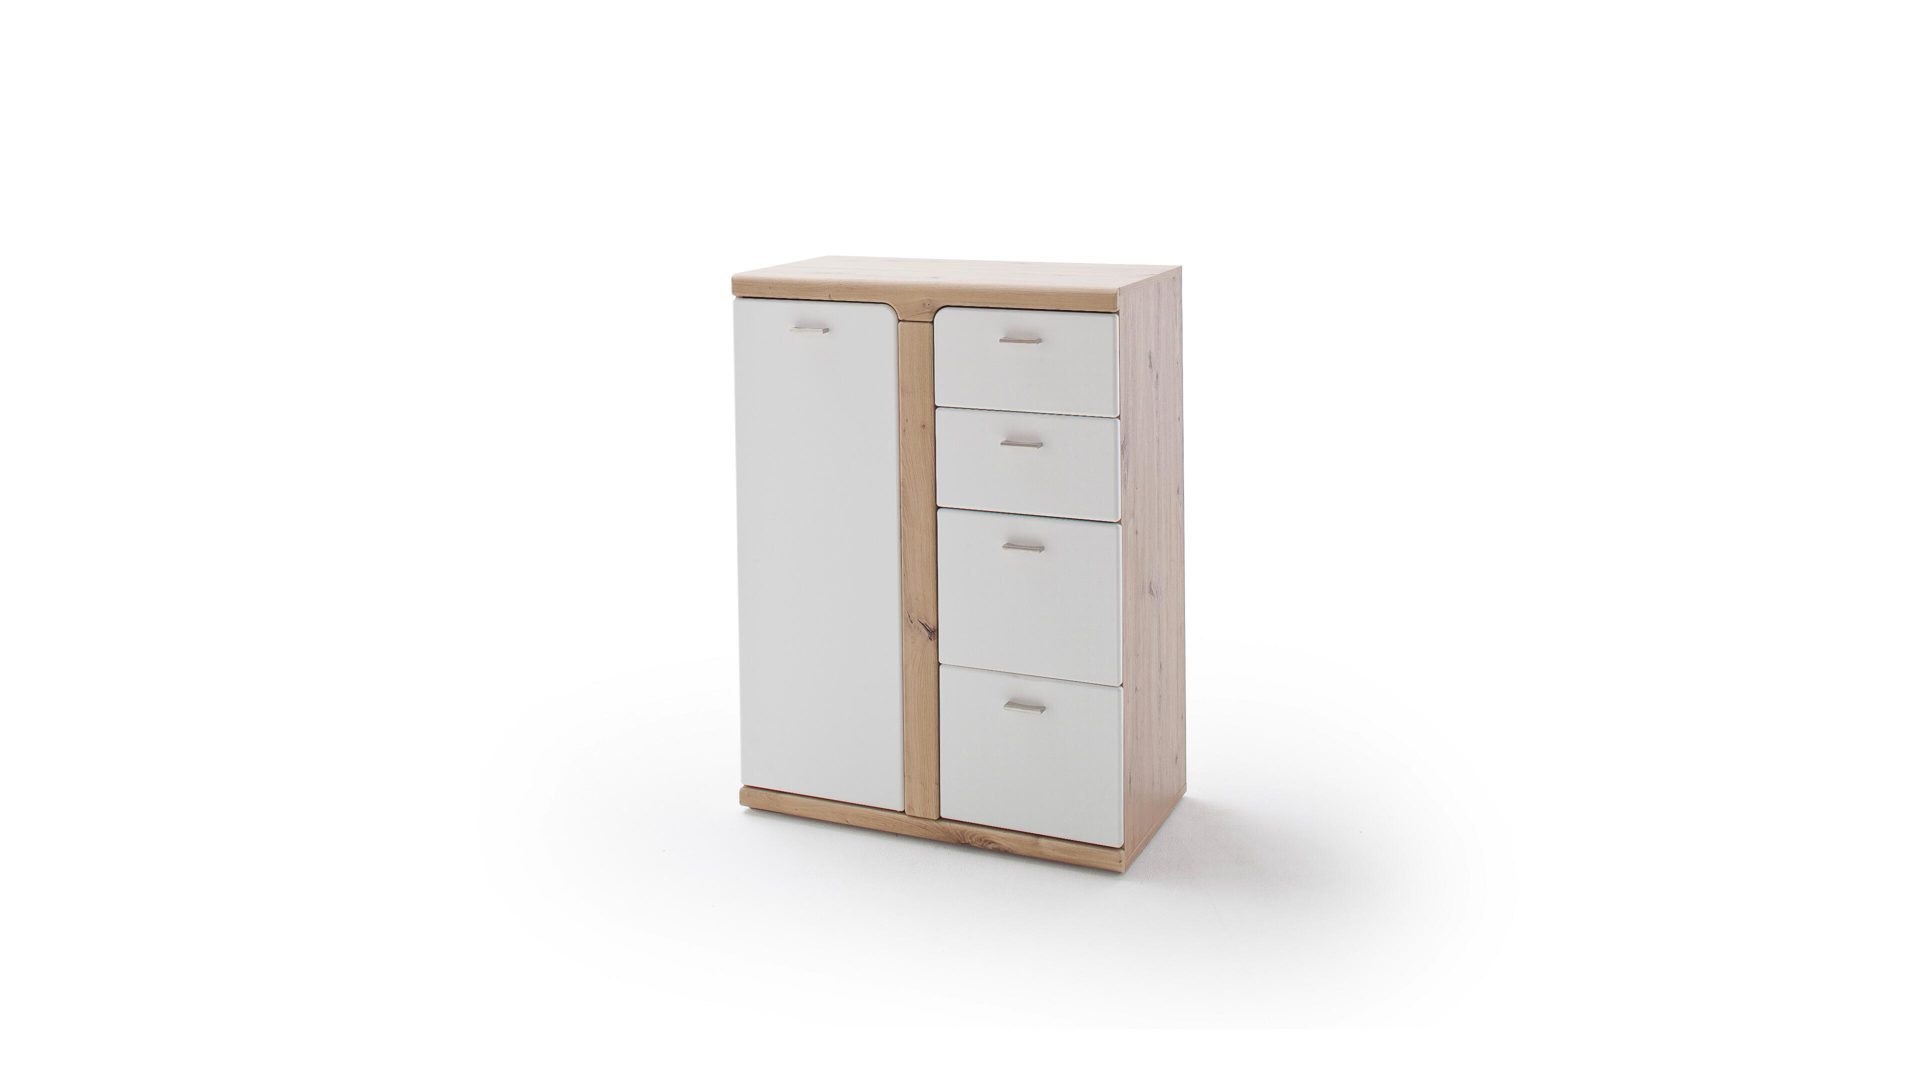 Kombikommode Mca furniture aus Holz in Weiß Garderoben-Kombikommode weiße & balkeneichefarbene Kunststoffoberflächen – eine Tür, vier Schubladen